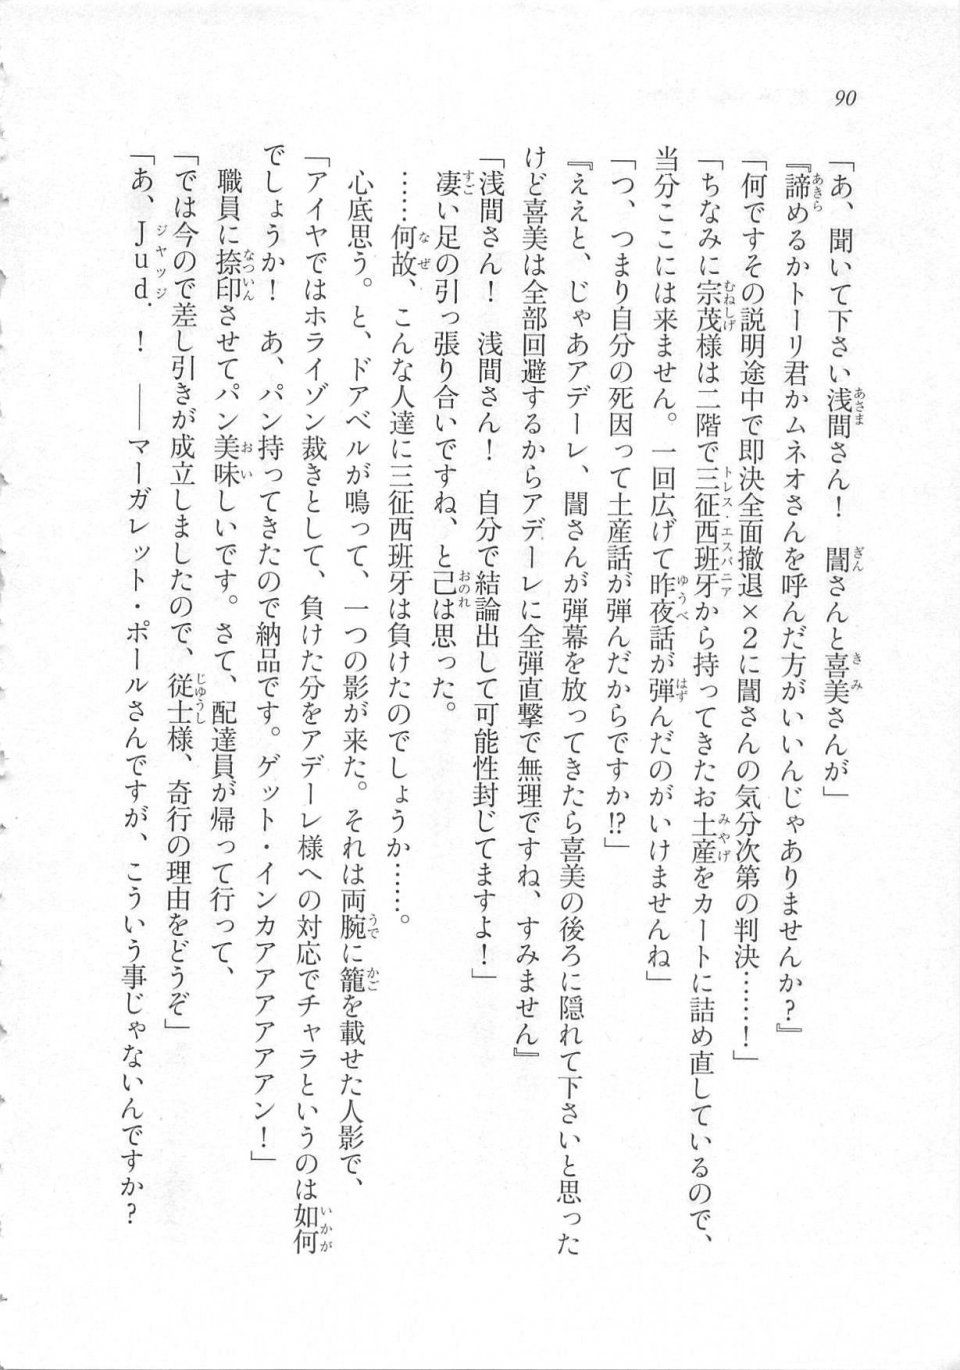 Kyoukai Senjou no Horizon LN Sidestory Vol 3 - Photo #94